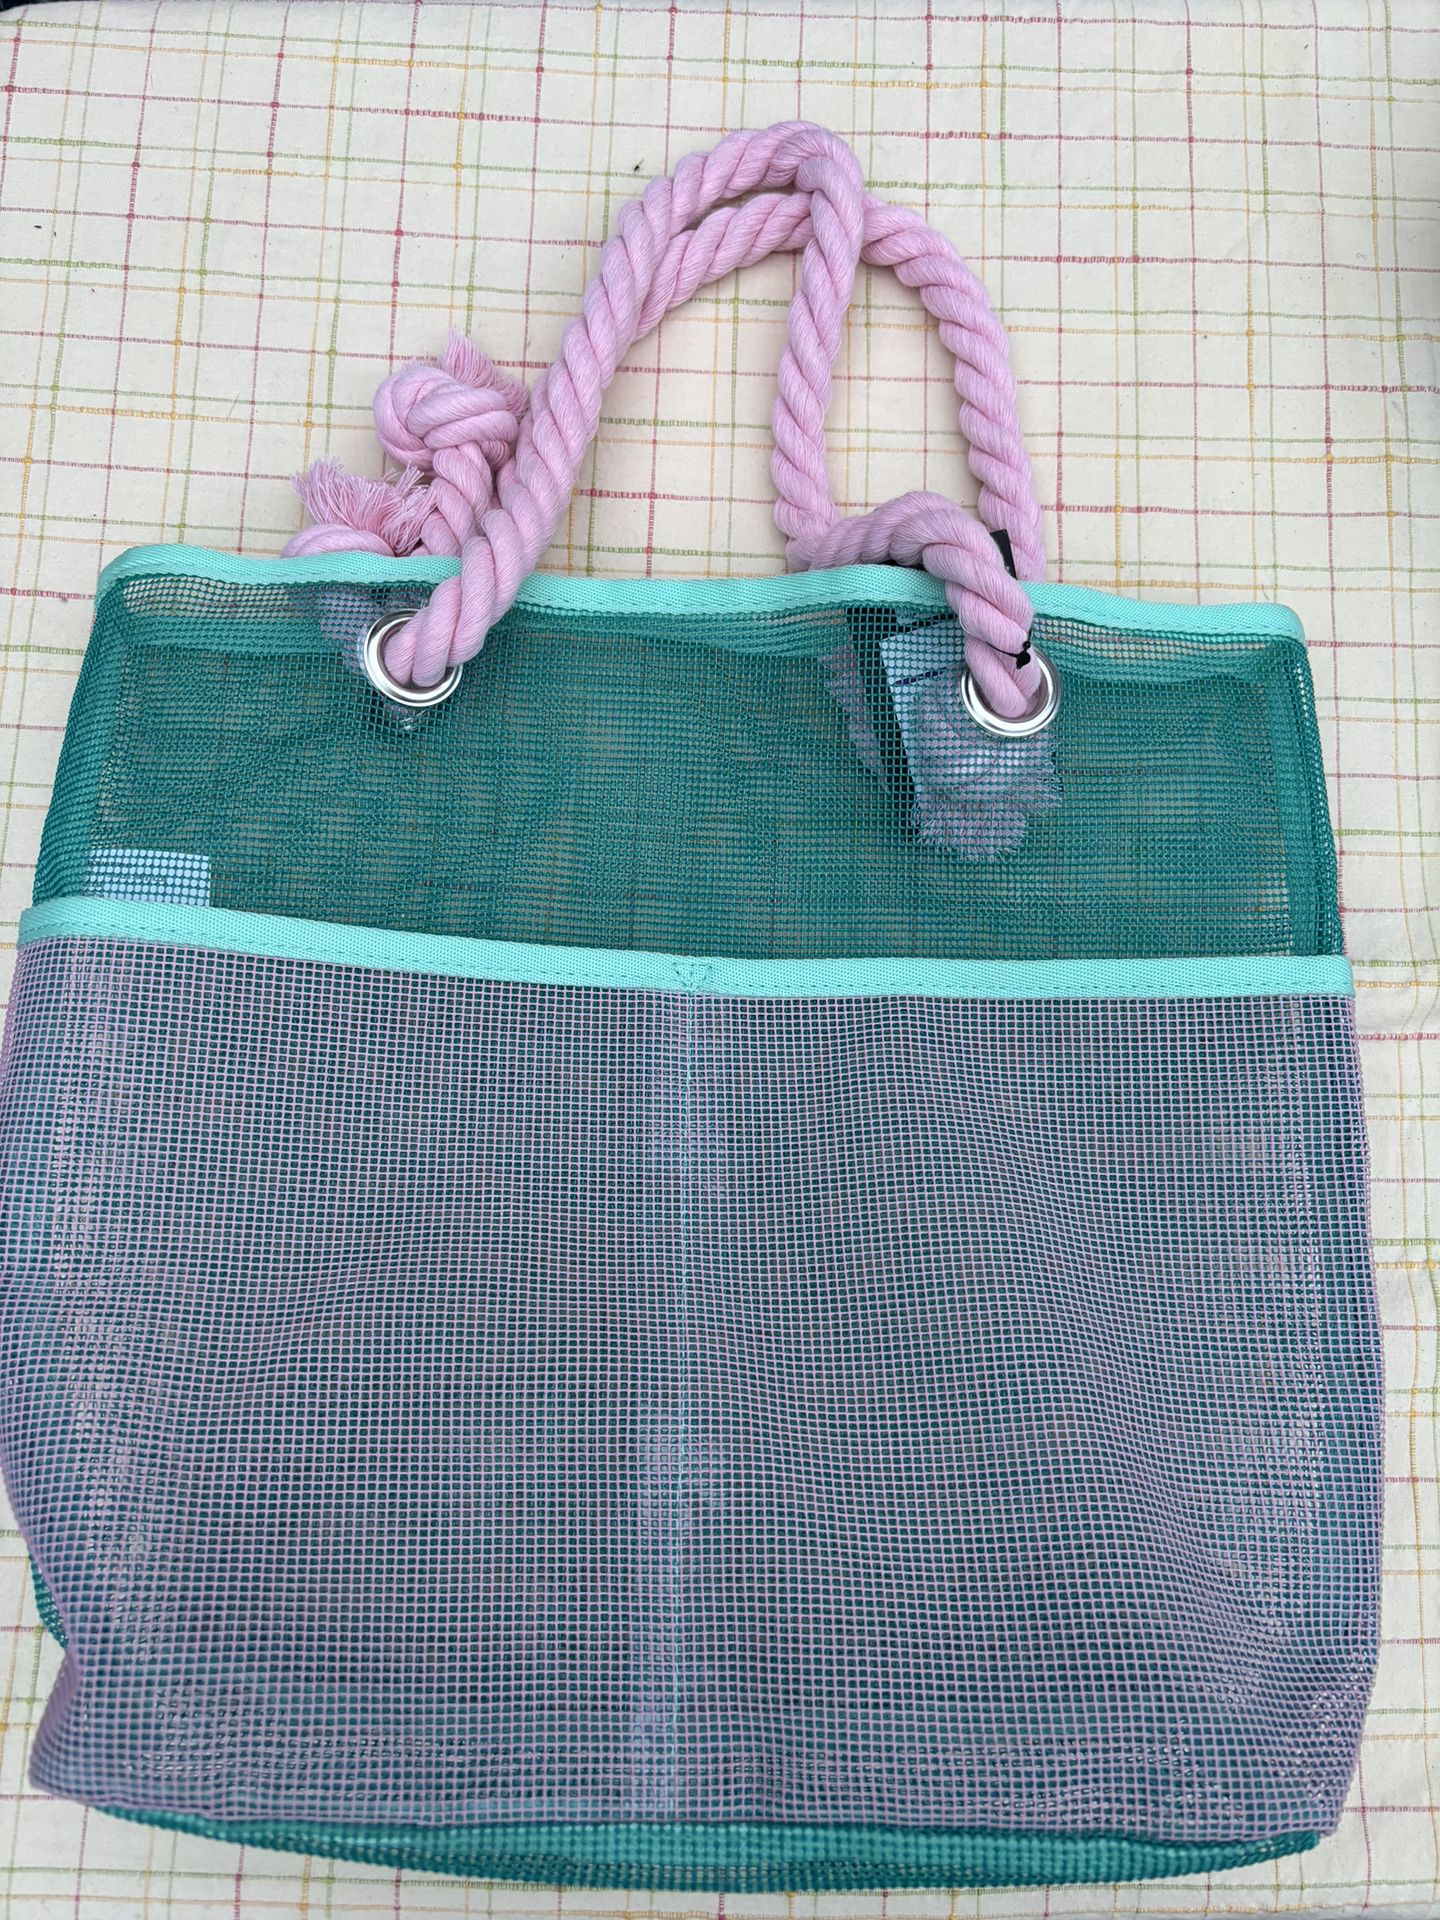 Teal Beach Mesh Bag w/ pink rope handles 